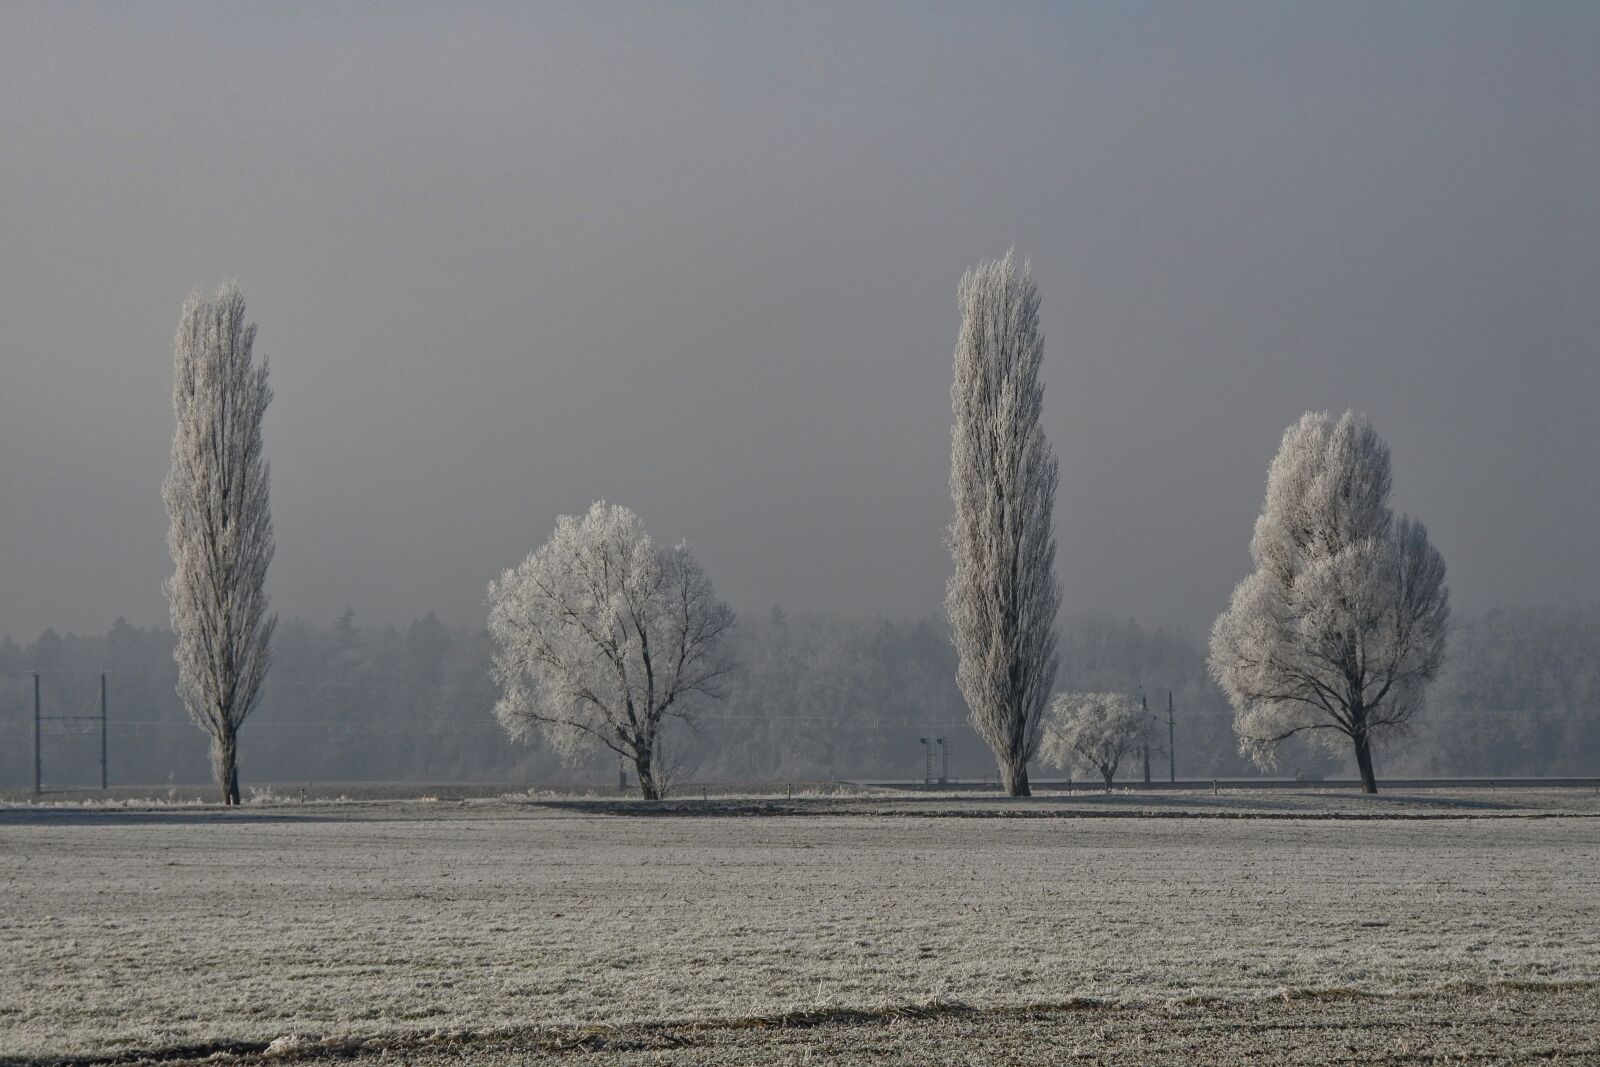 1 NIKKOR VR 10-100mm f/4-5.6 sample photo. Fog, cold, landscape photography